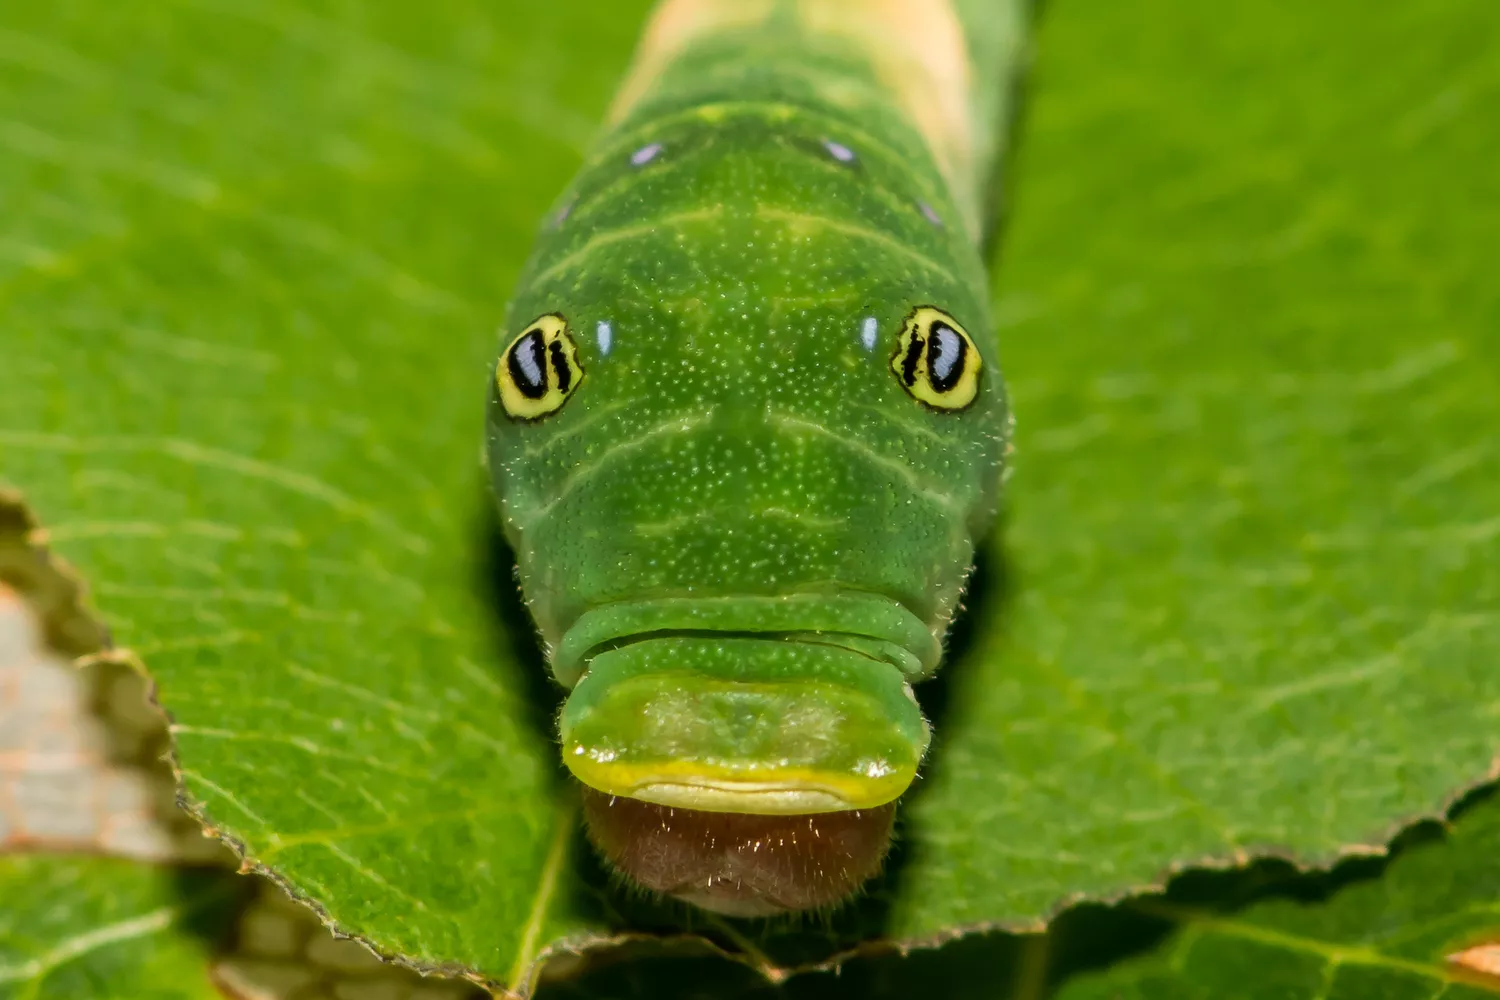 Ярко-зеленая гусеница бабочки Парусник главк с желтыми глазами и открытым ртом